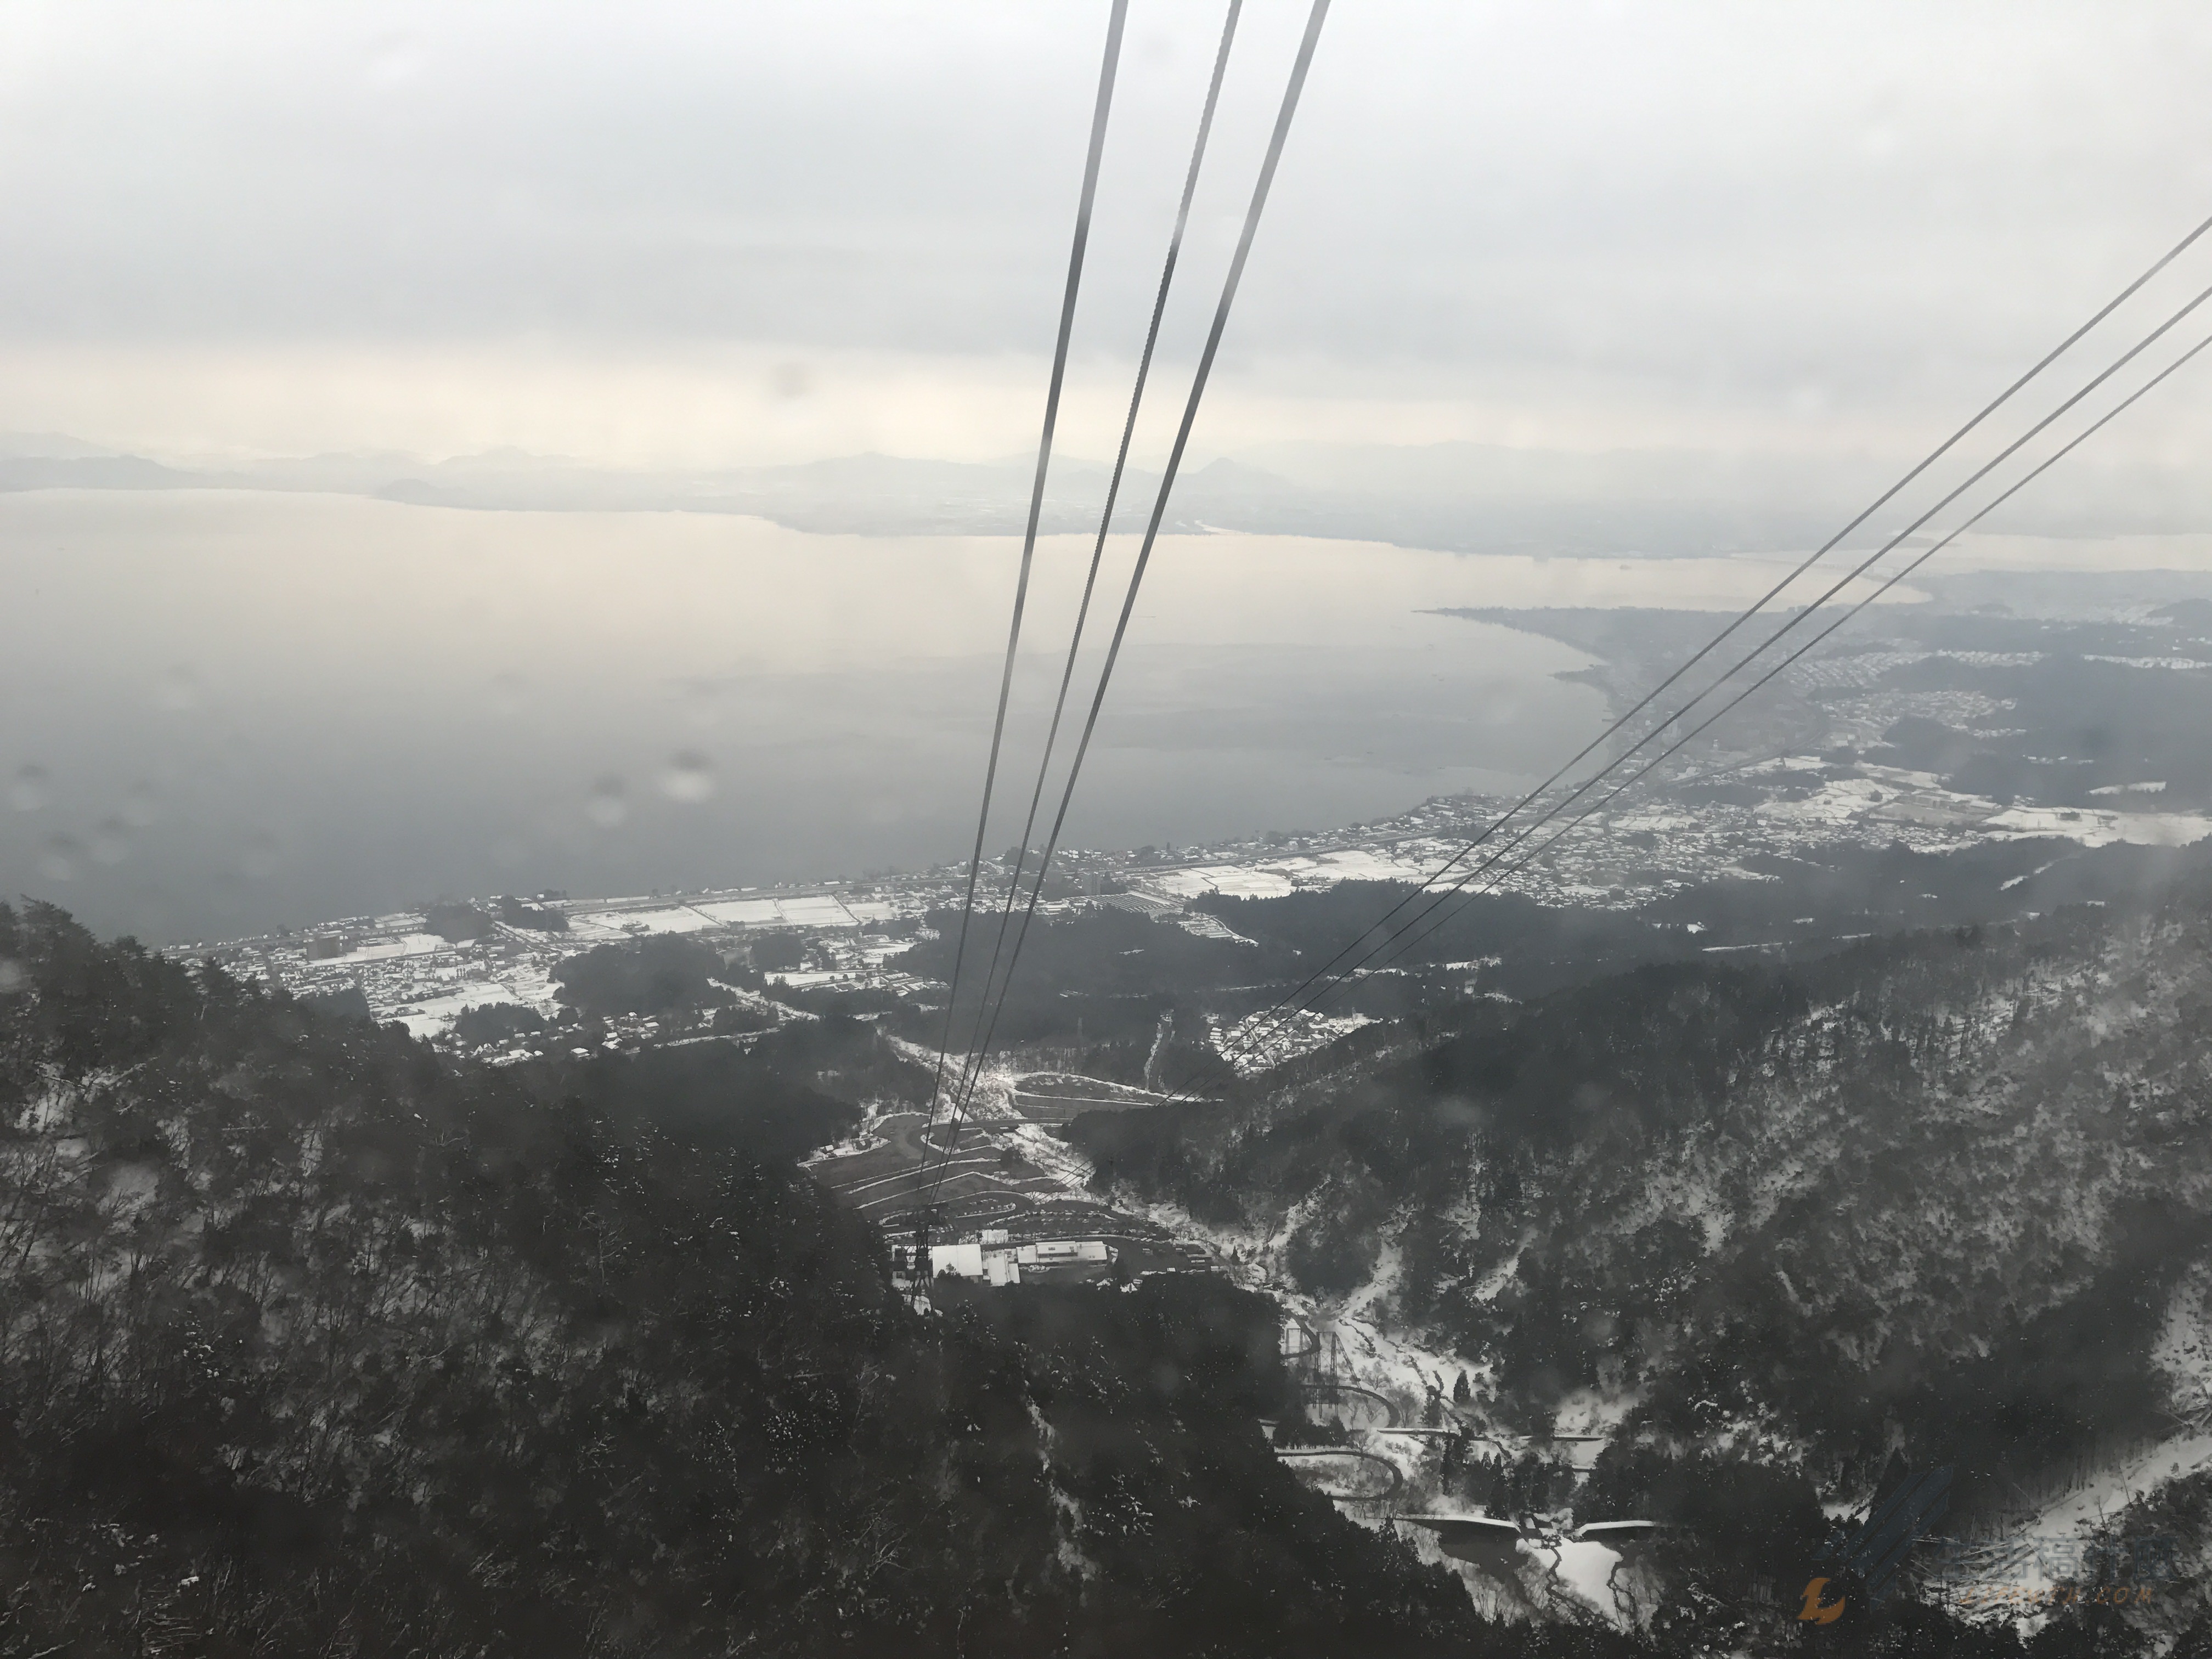 日本滑雪旅遊》琵琶湖valley滑雪場與空中纜車一日遊